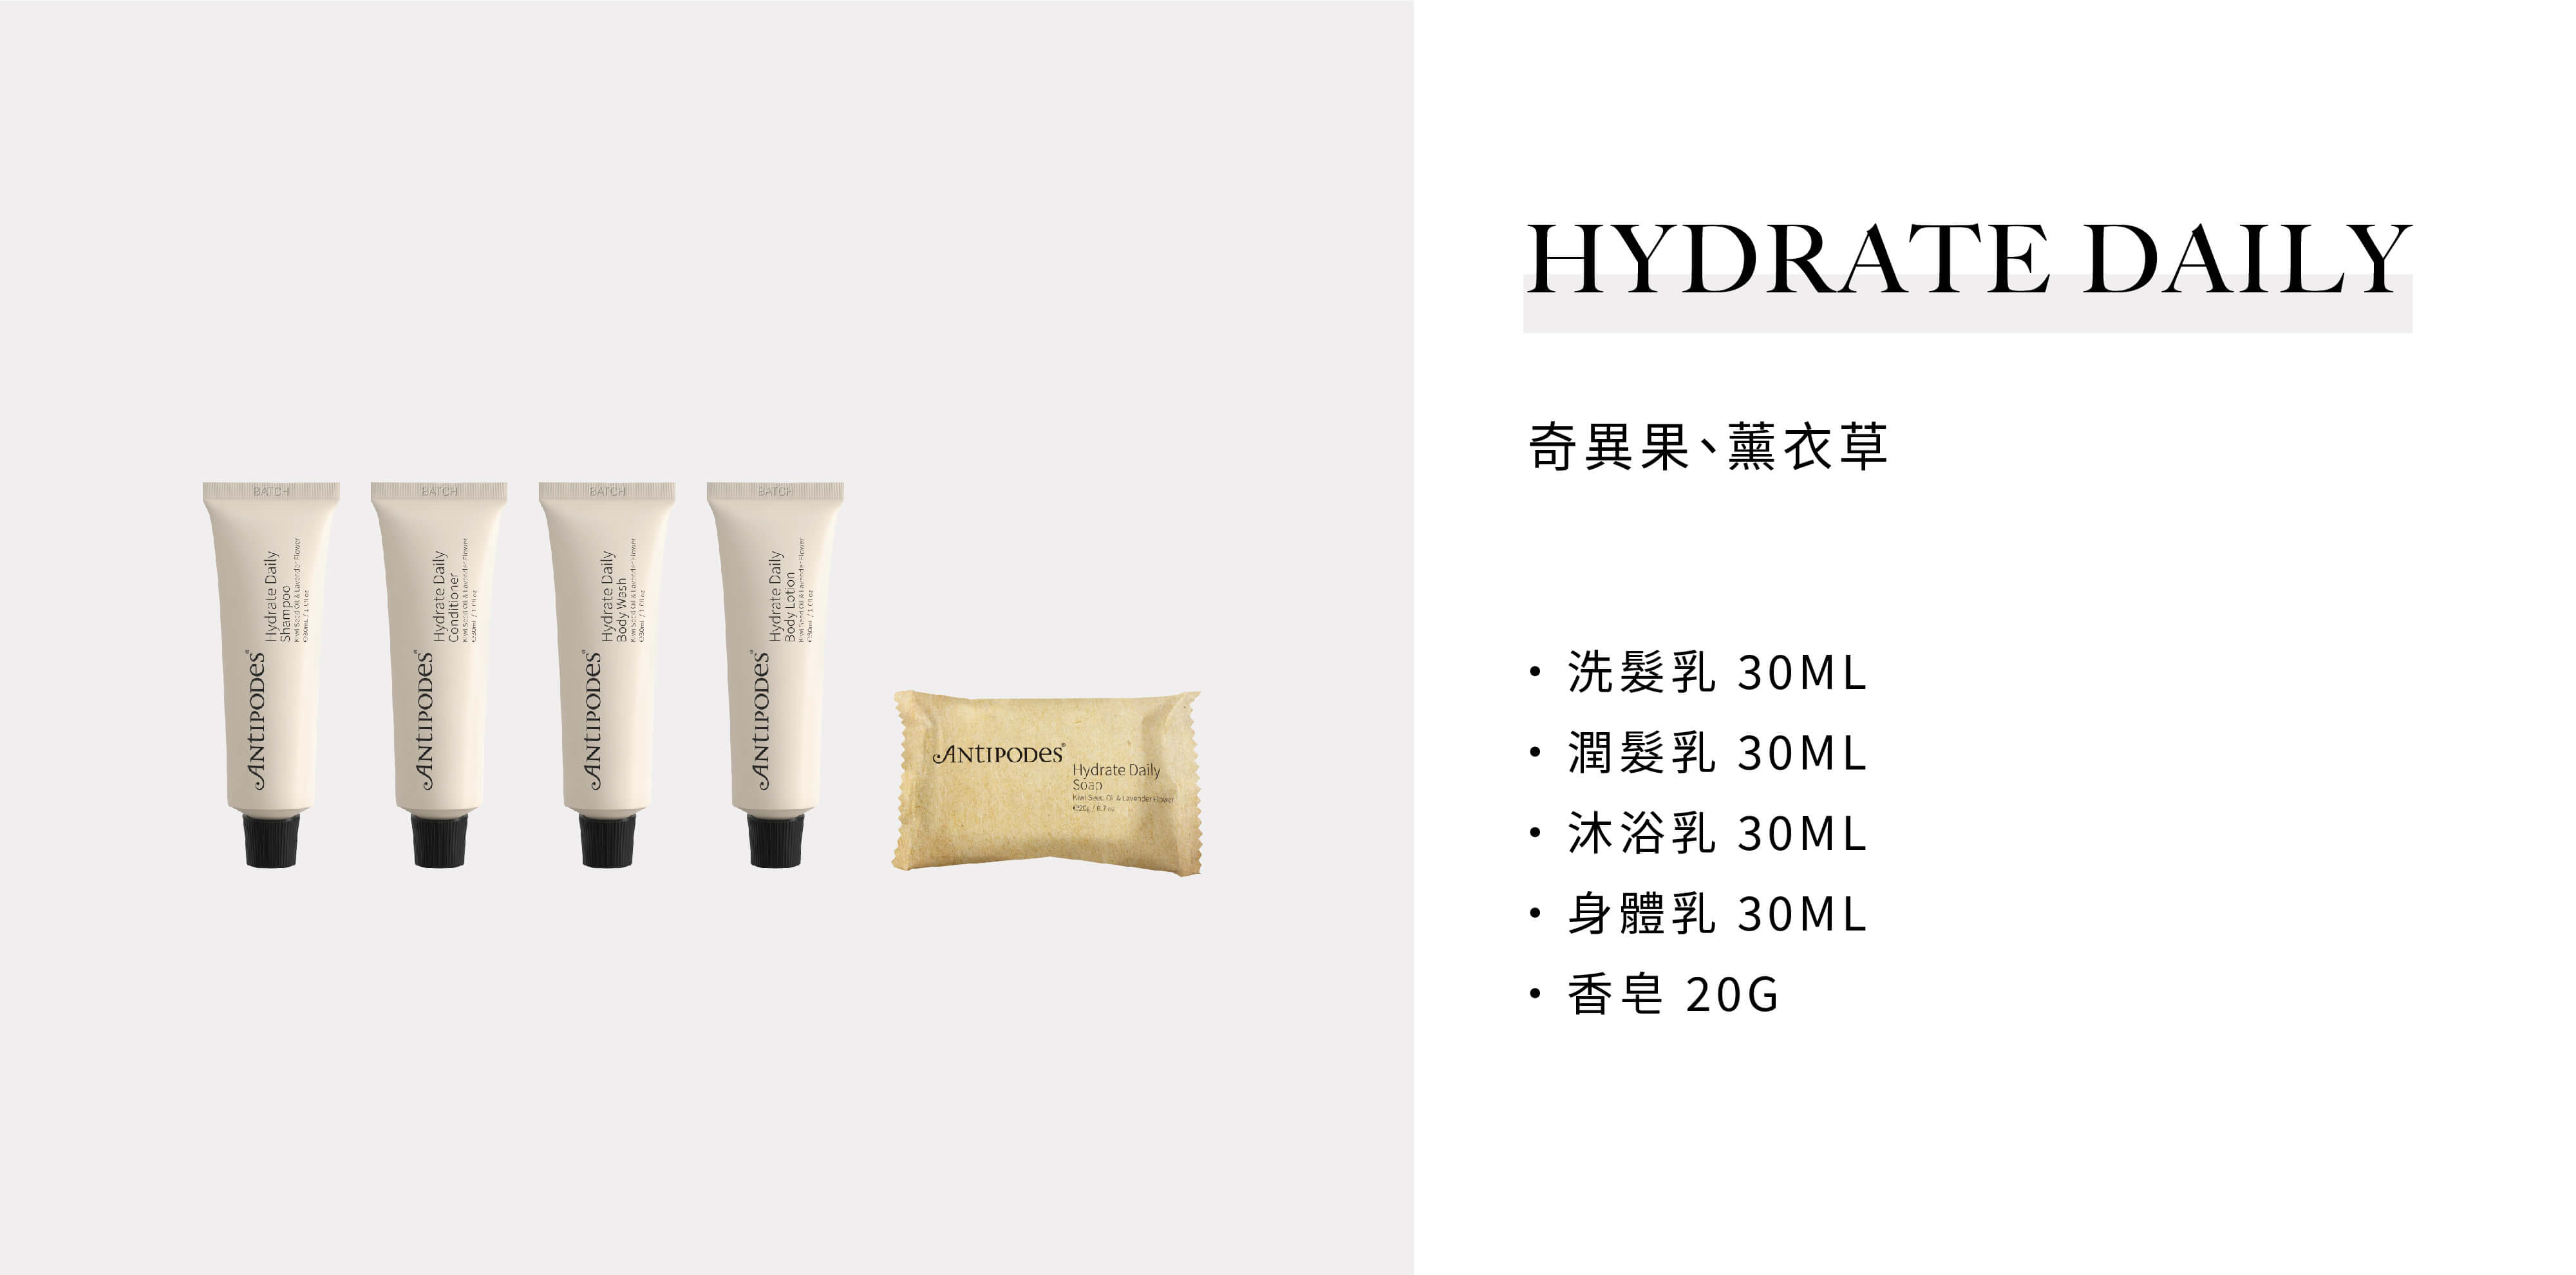 飯店沐浴用品Antipodes的Hydrate Daily系列由飯店沐浴備品供應商Sunlife晨居供應